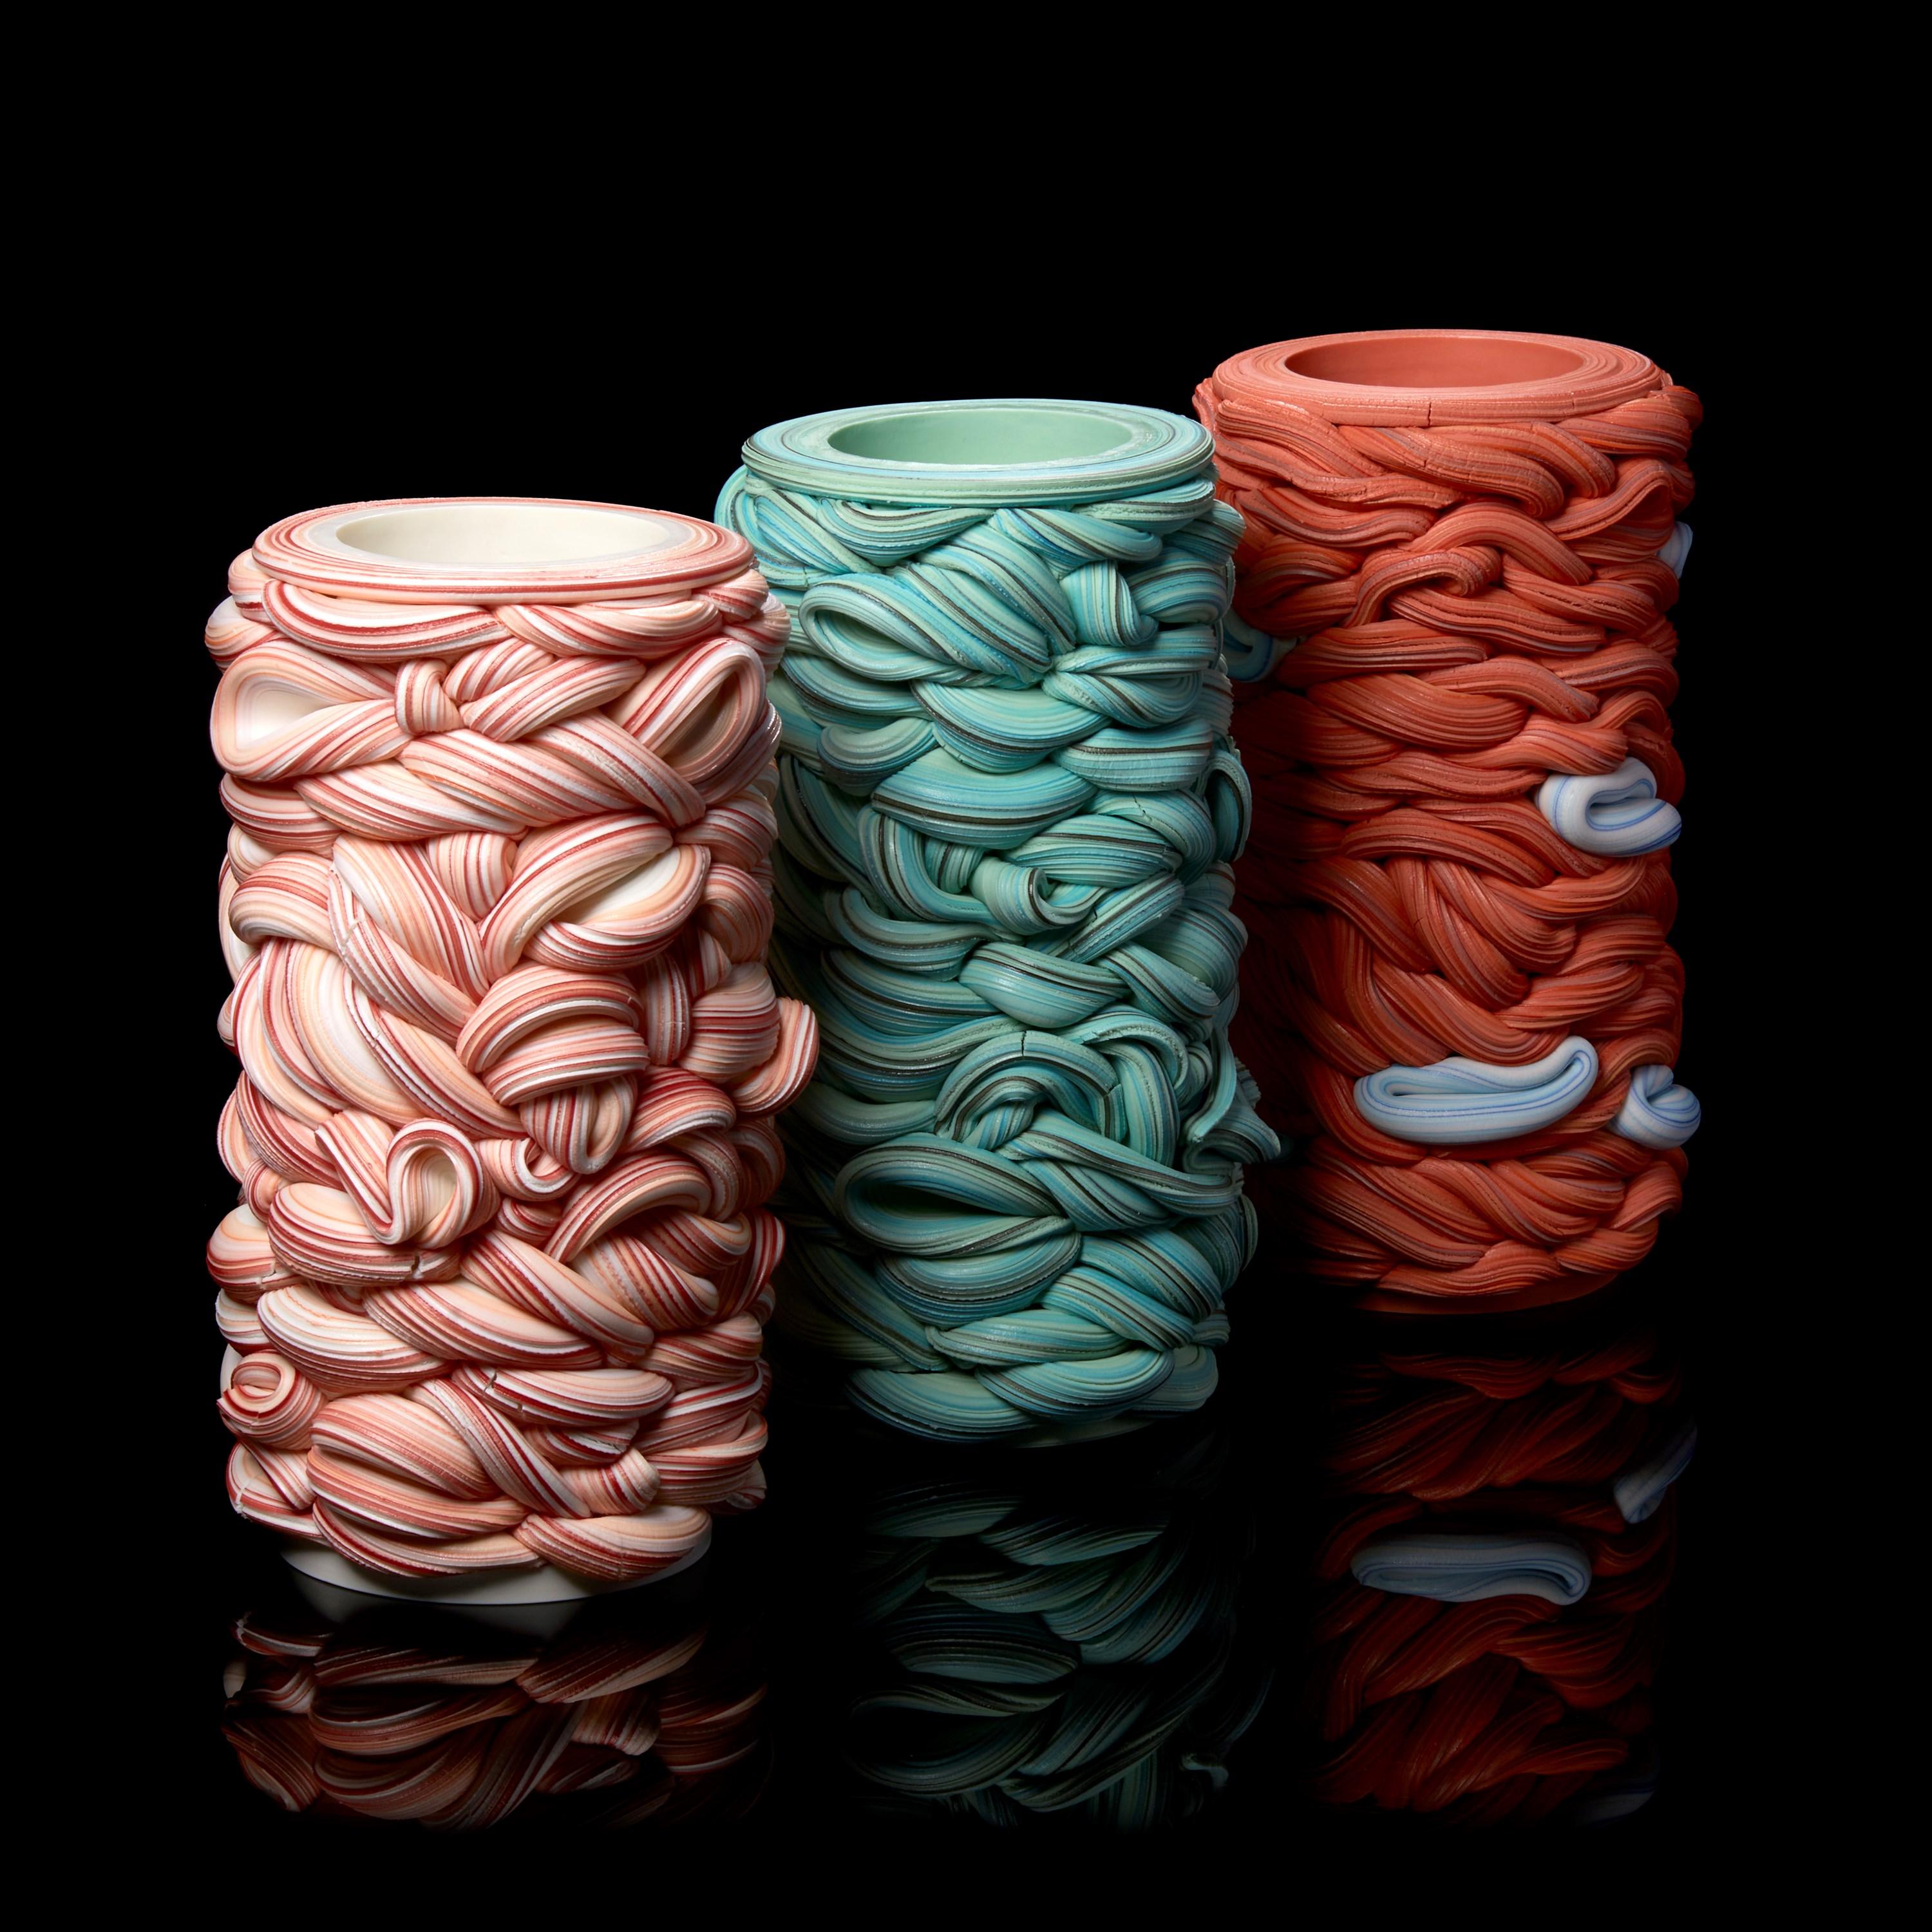 Banded Fold II, a Pink Parian Porcelain Sculptural Vessel by Steven Edwards 2